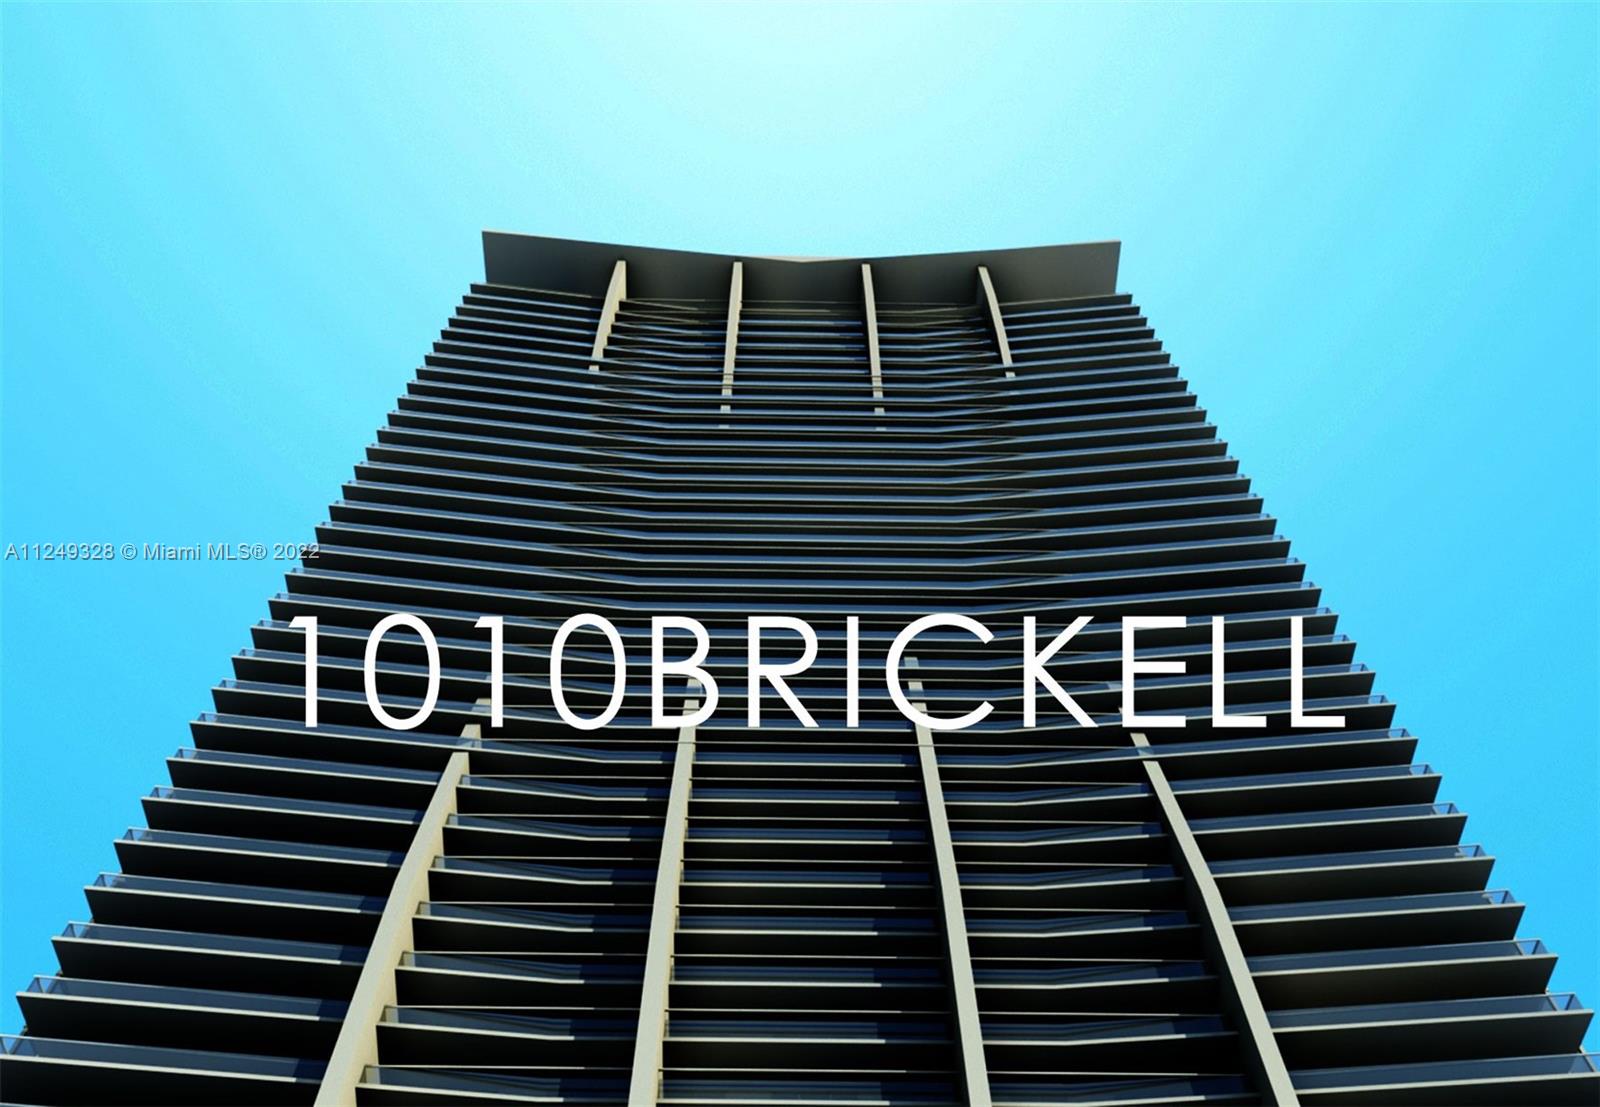 1010 Brickell image #1